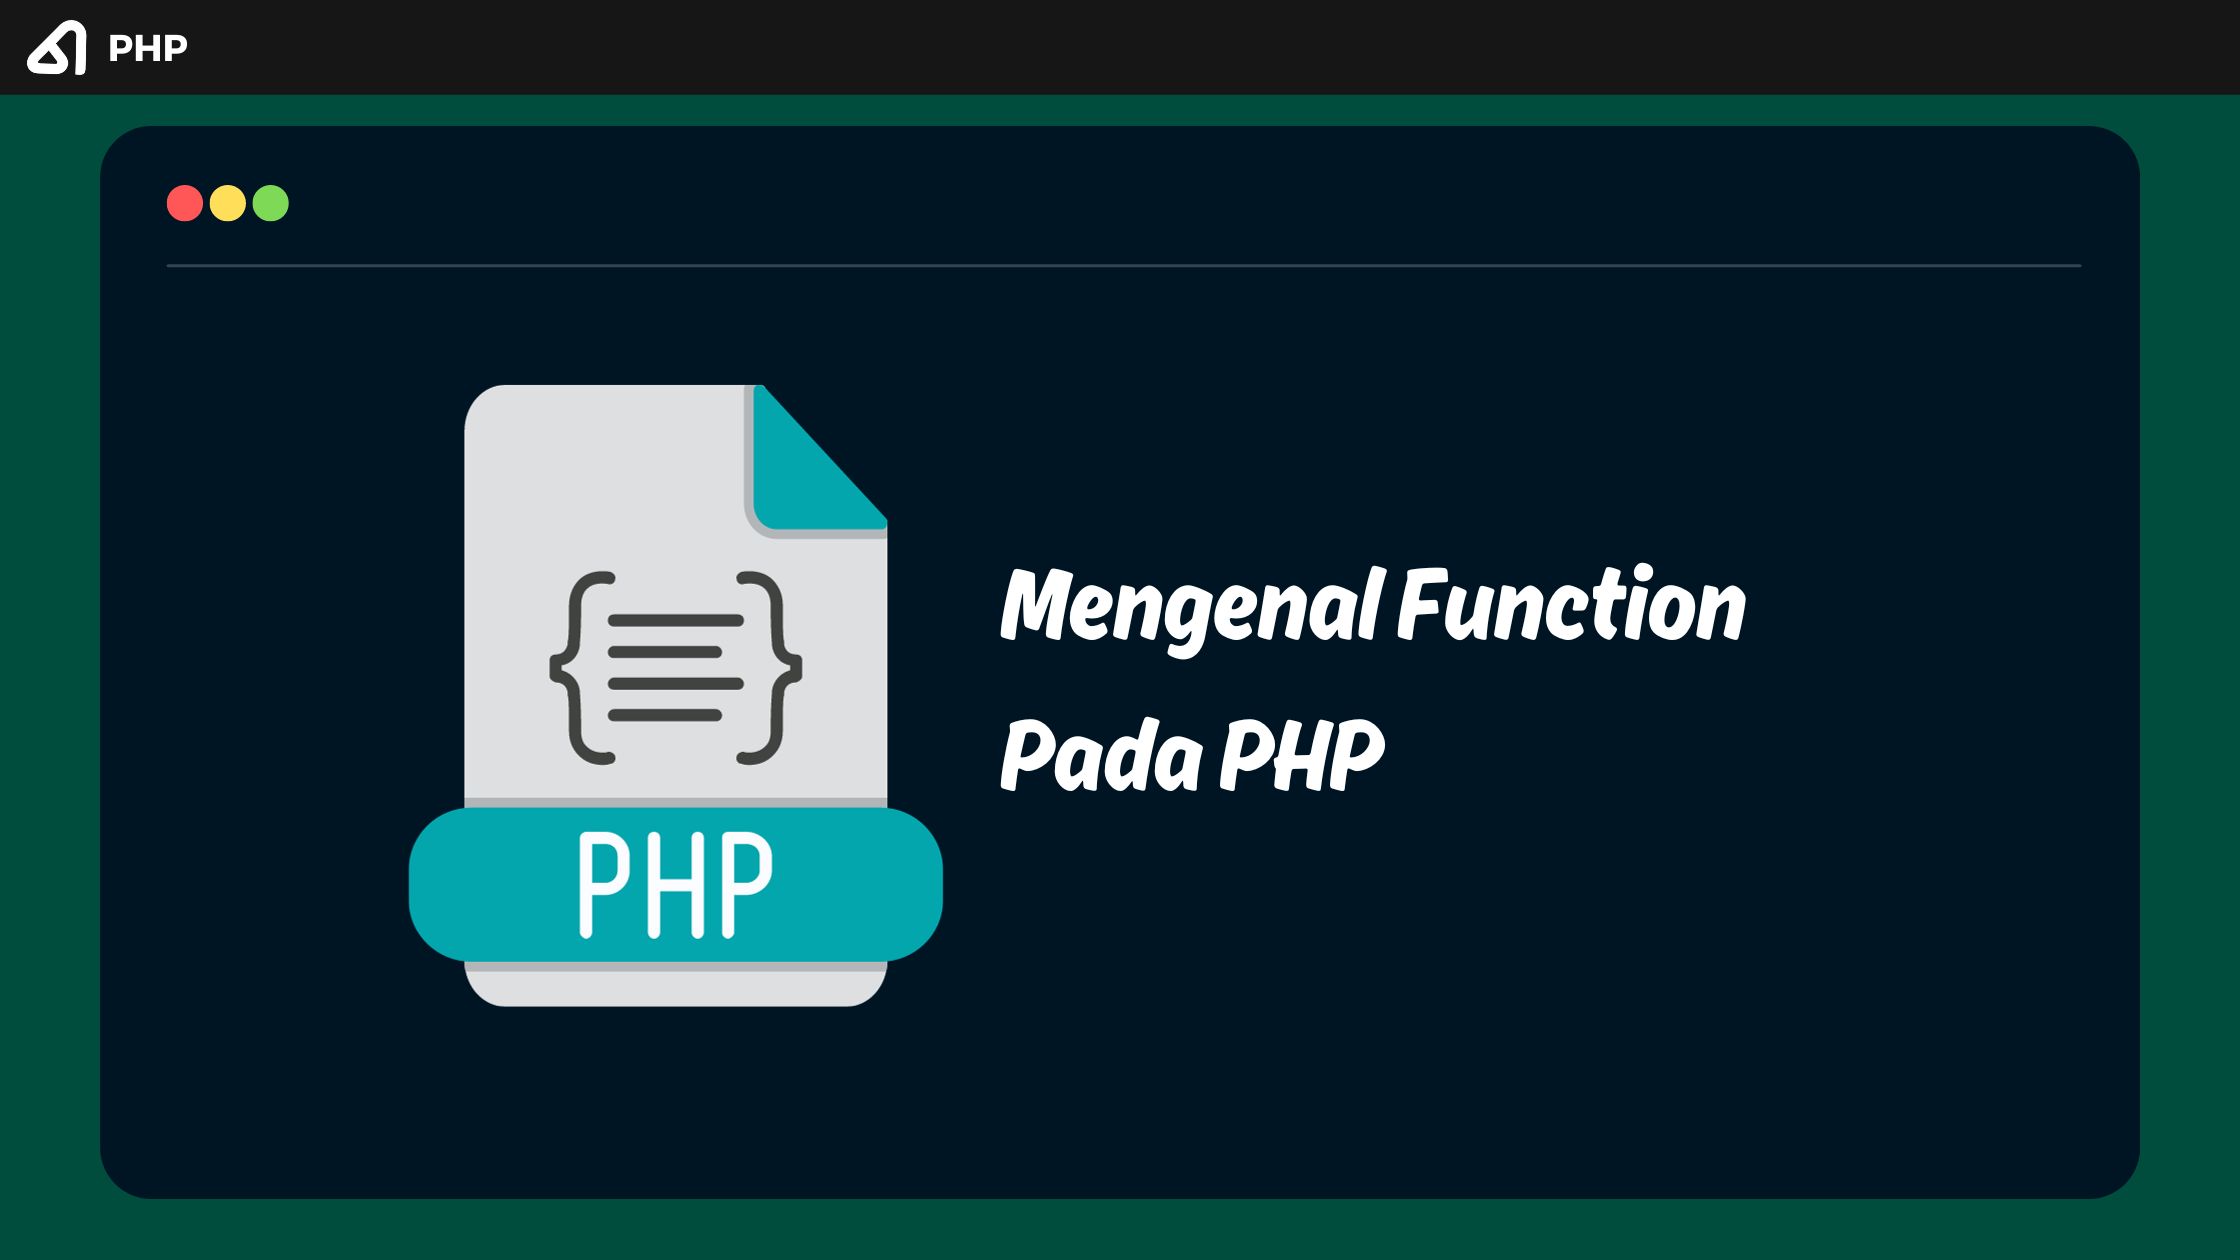 Mengenal Function Pada PHP